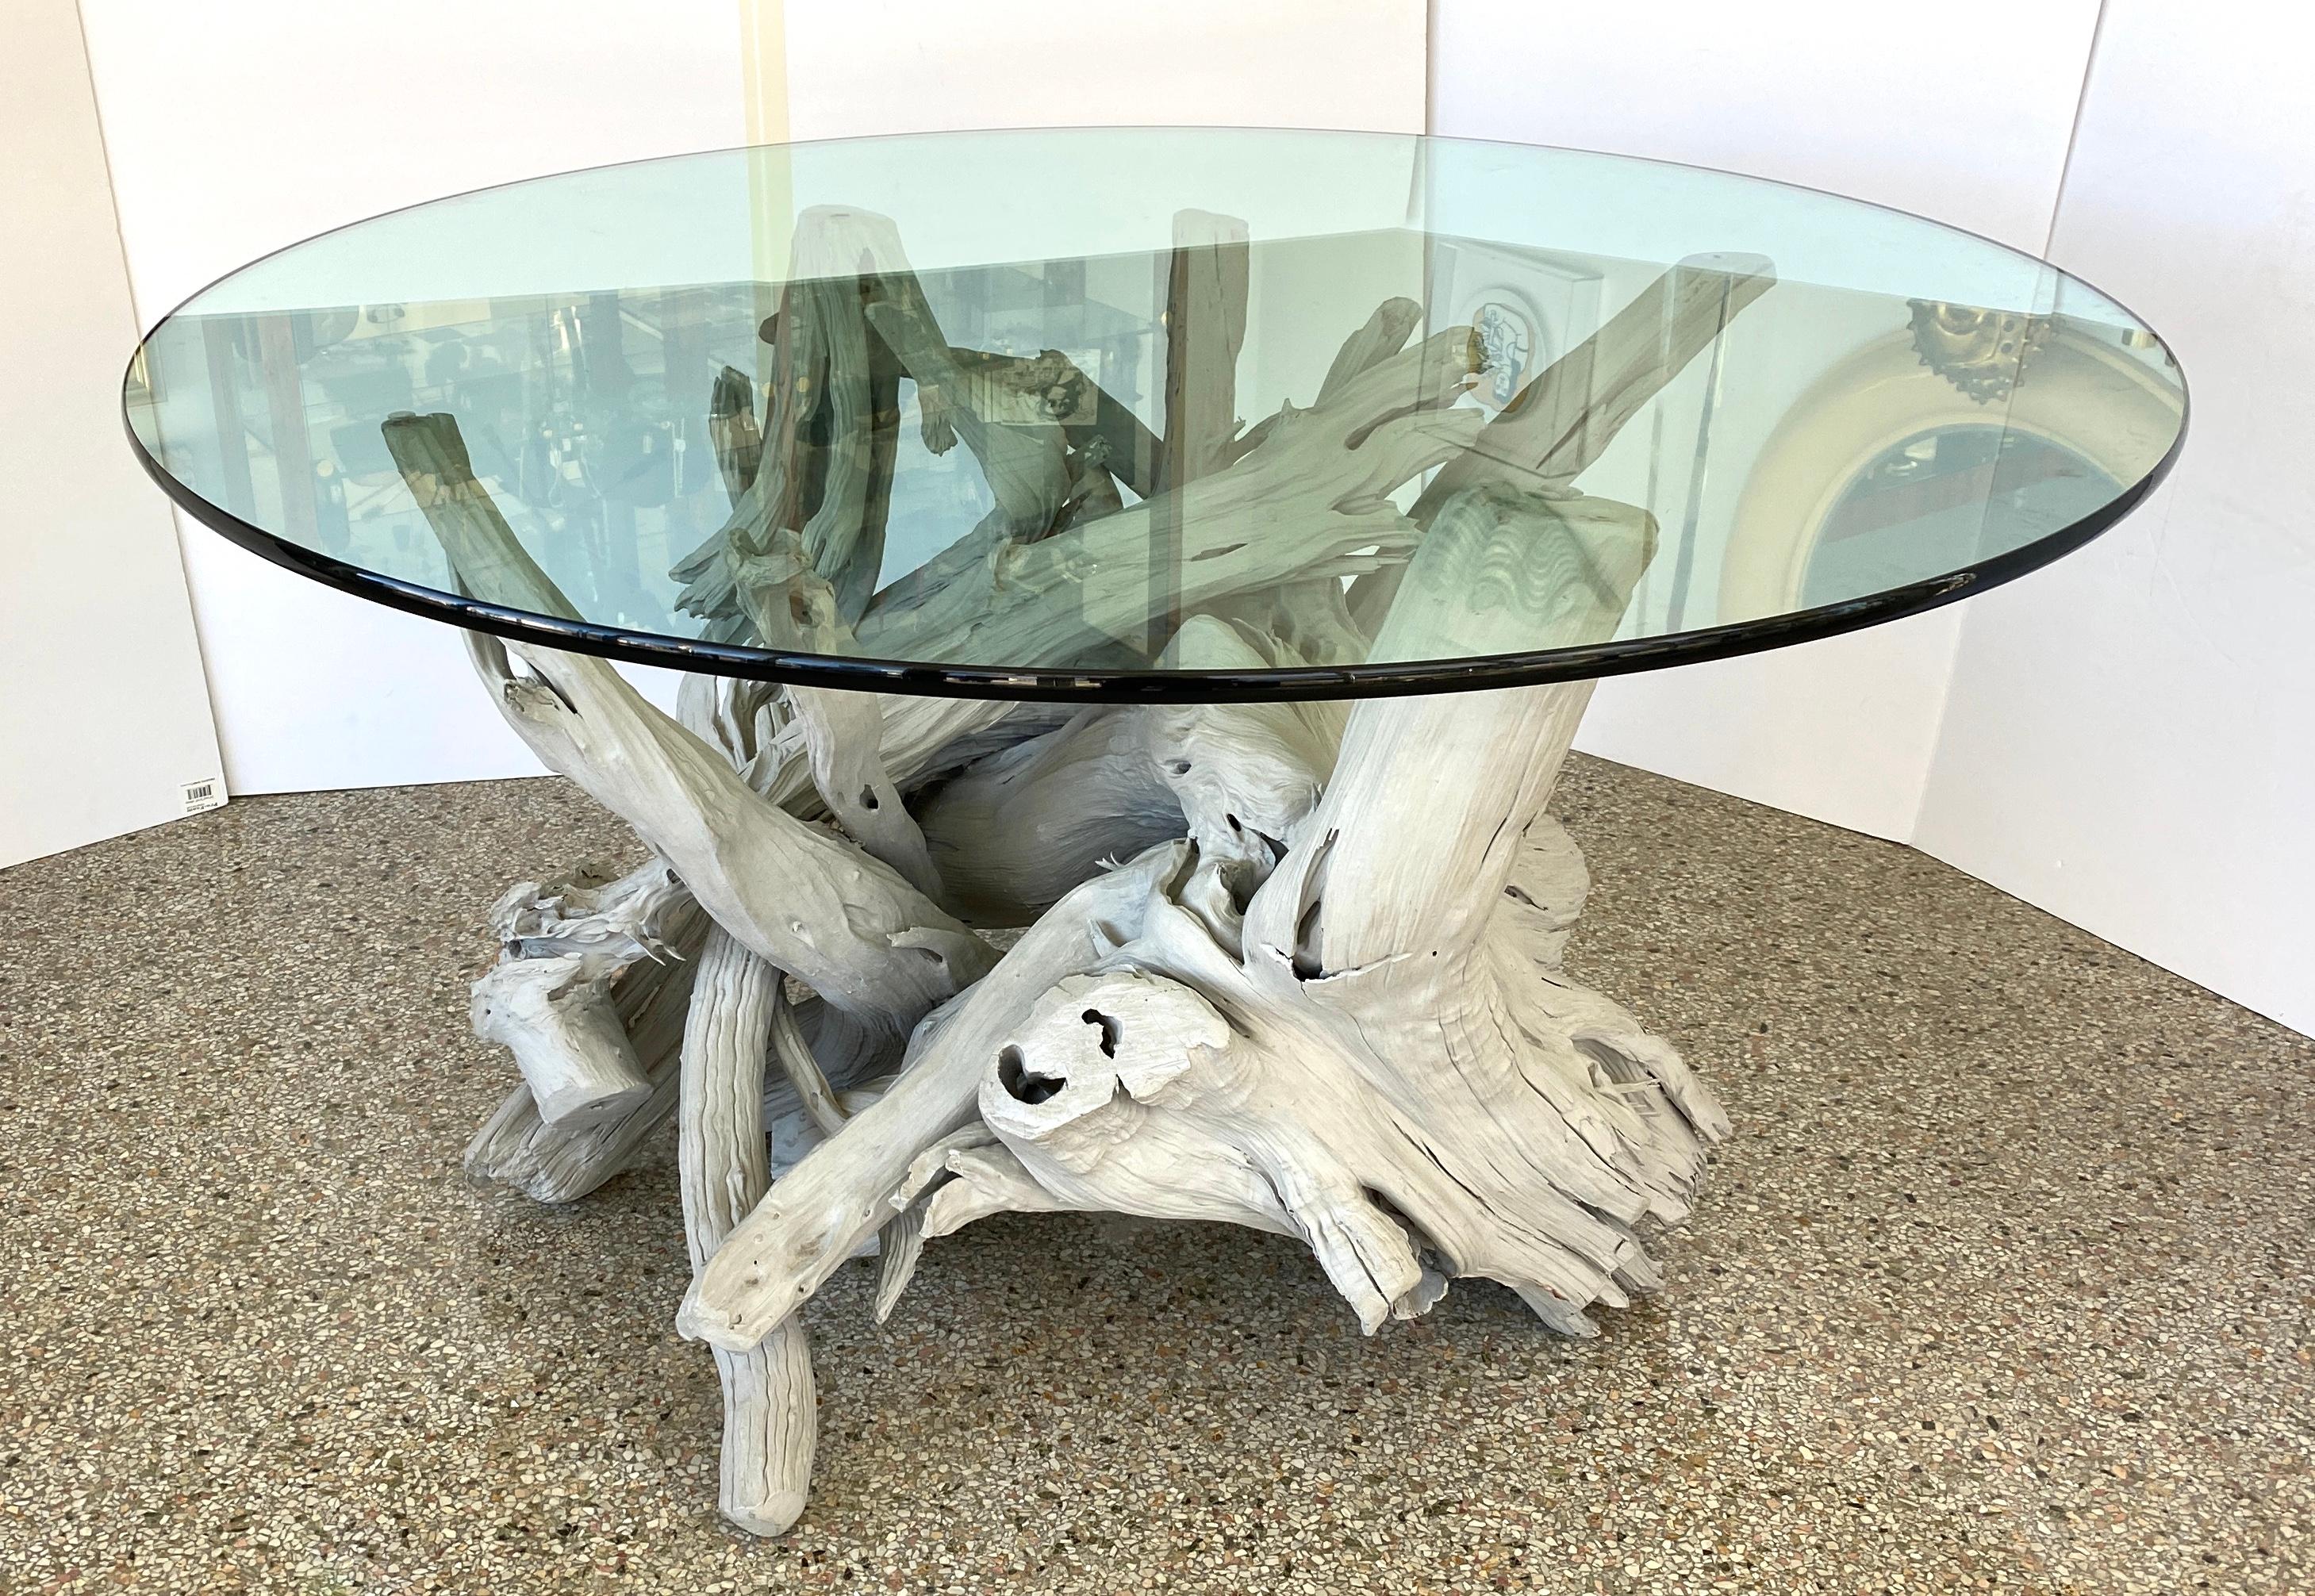 Cette table en bois flotté élégante et chic, avec son lavis gris clair, fera une déclaration subtile avec sa forme, sa coloration et sa grande échelle. 

Remarque : le verre a une épaisseur de 0,75